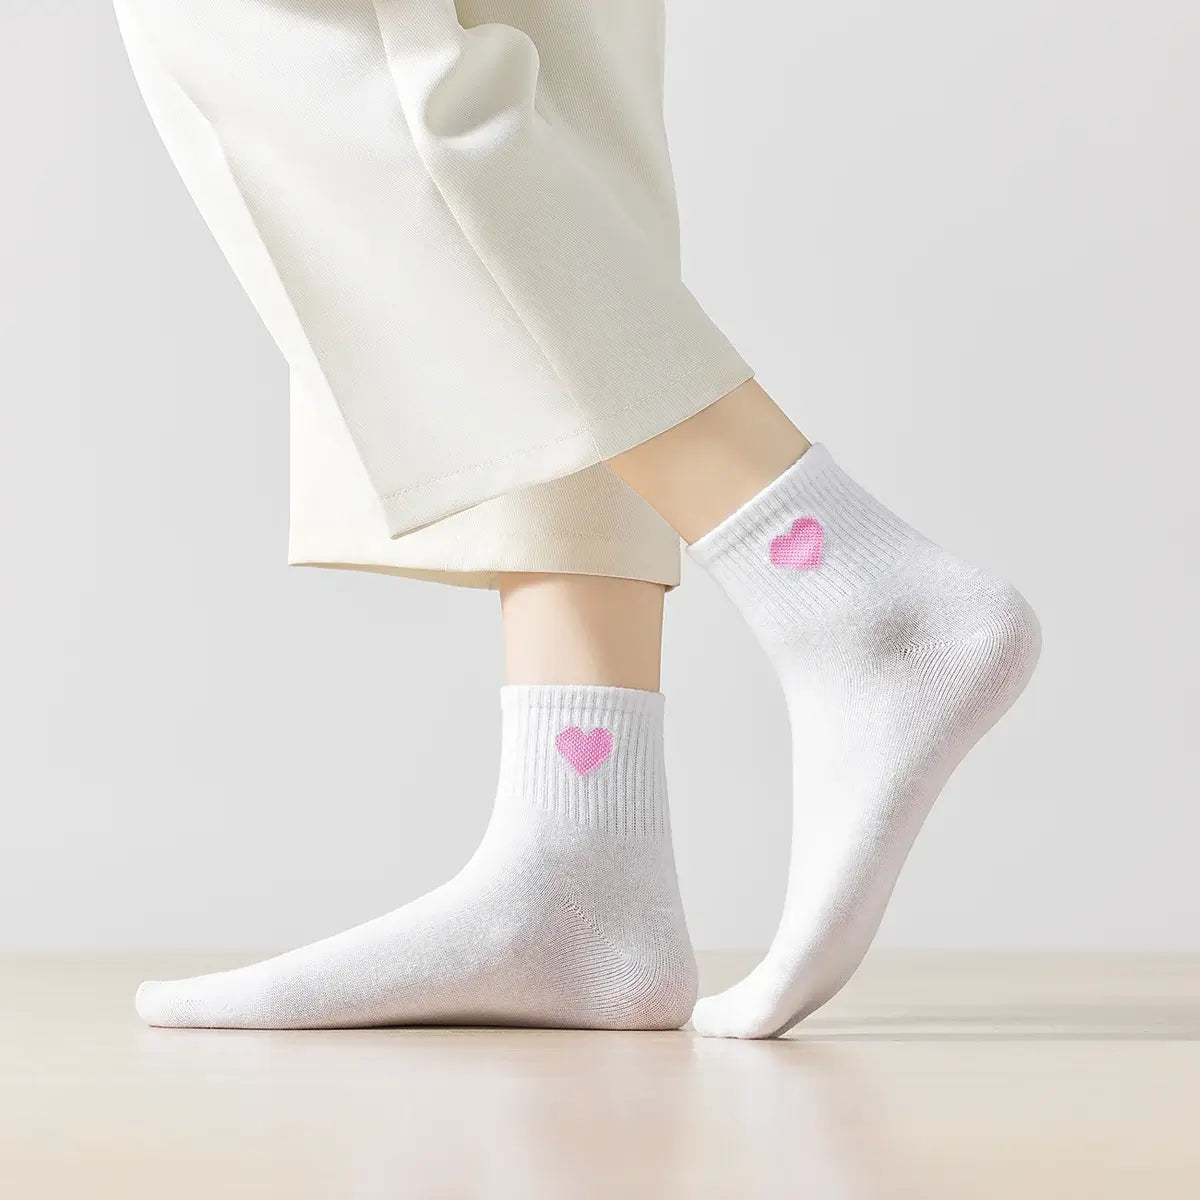 Chaussettes longues grises adultes en coton avec un cœur rose sur le côté | Chaussettes abordables et de haute qualité | Un excellent choix pour les adultes qui aiment les cœurs |